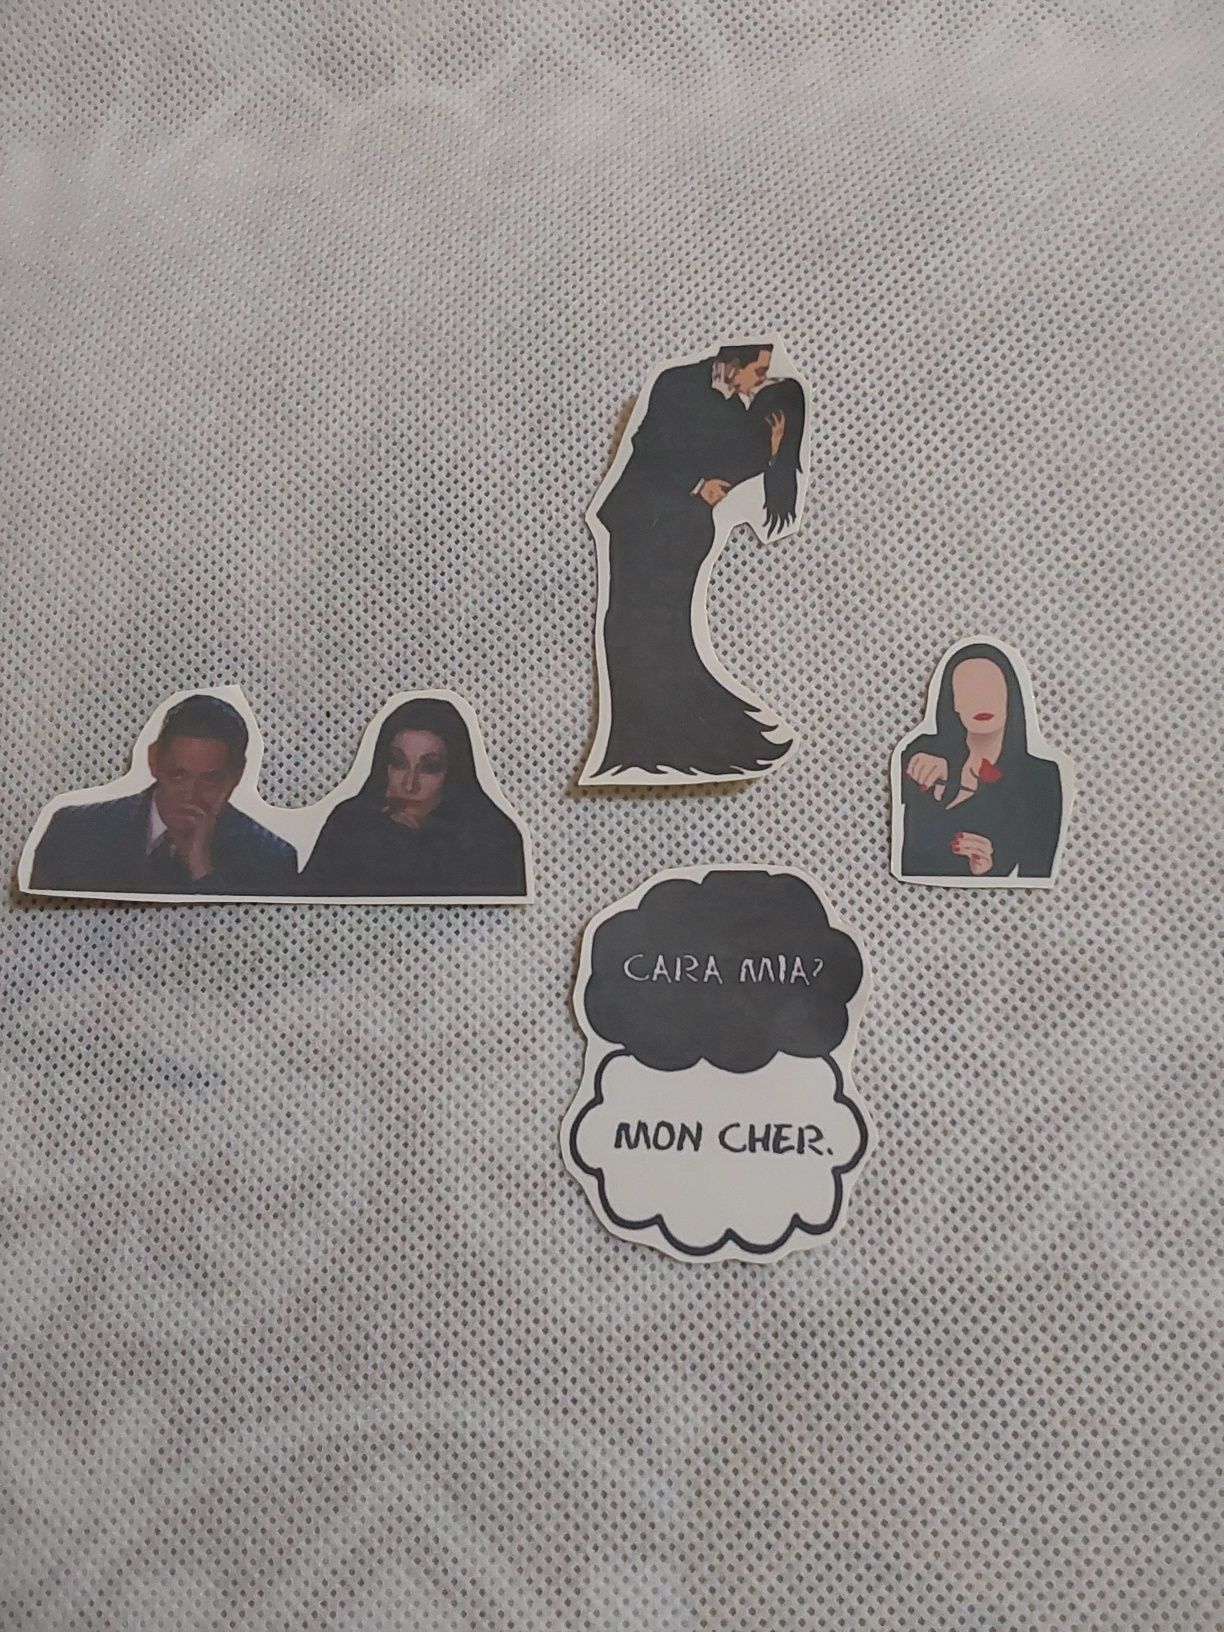 Familia Addams stickers